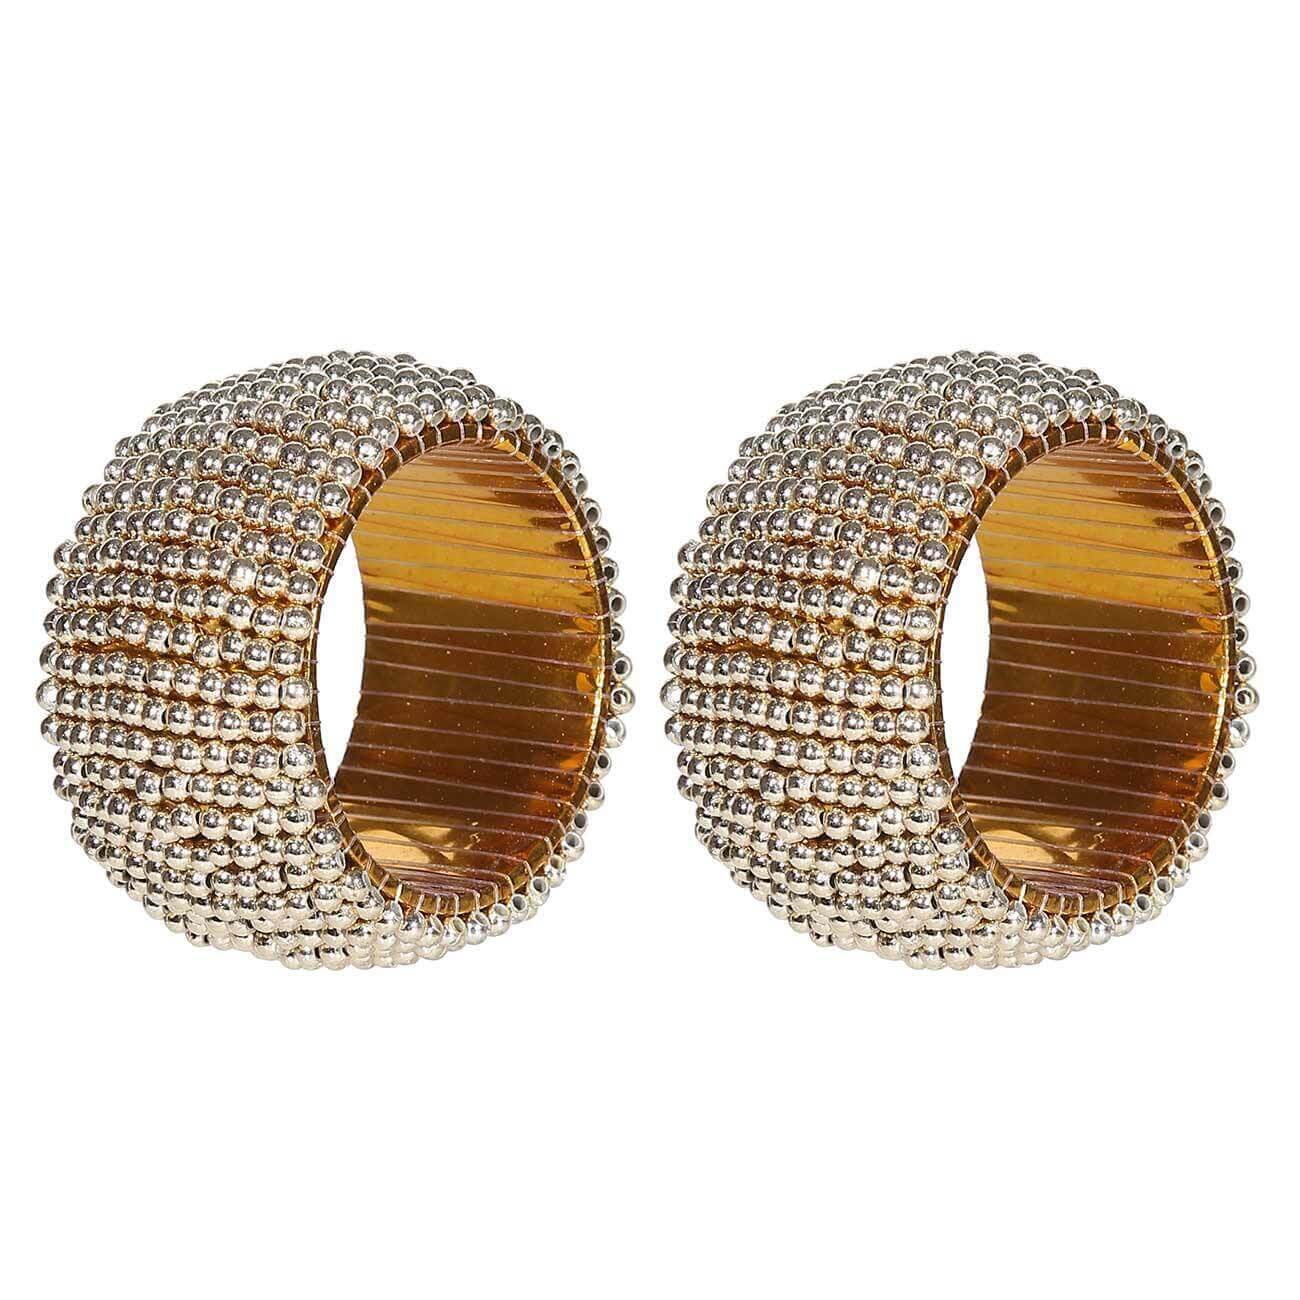 Кольцо для салфеток, 5 см, 2 шт, бисер, круглое, золотистое, Shiny beads кольцо для салфеток 5 см 2 шт бисер круглое золотистое shiny beads